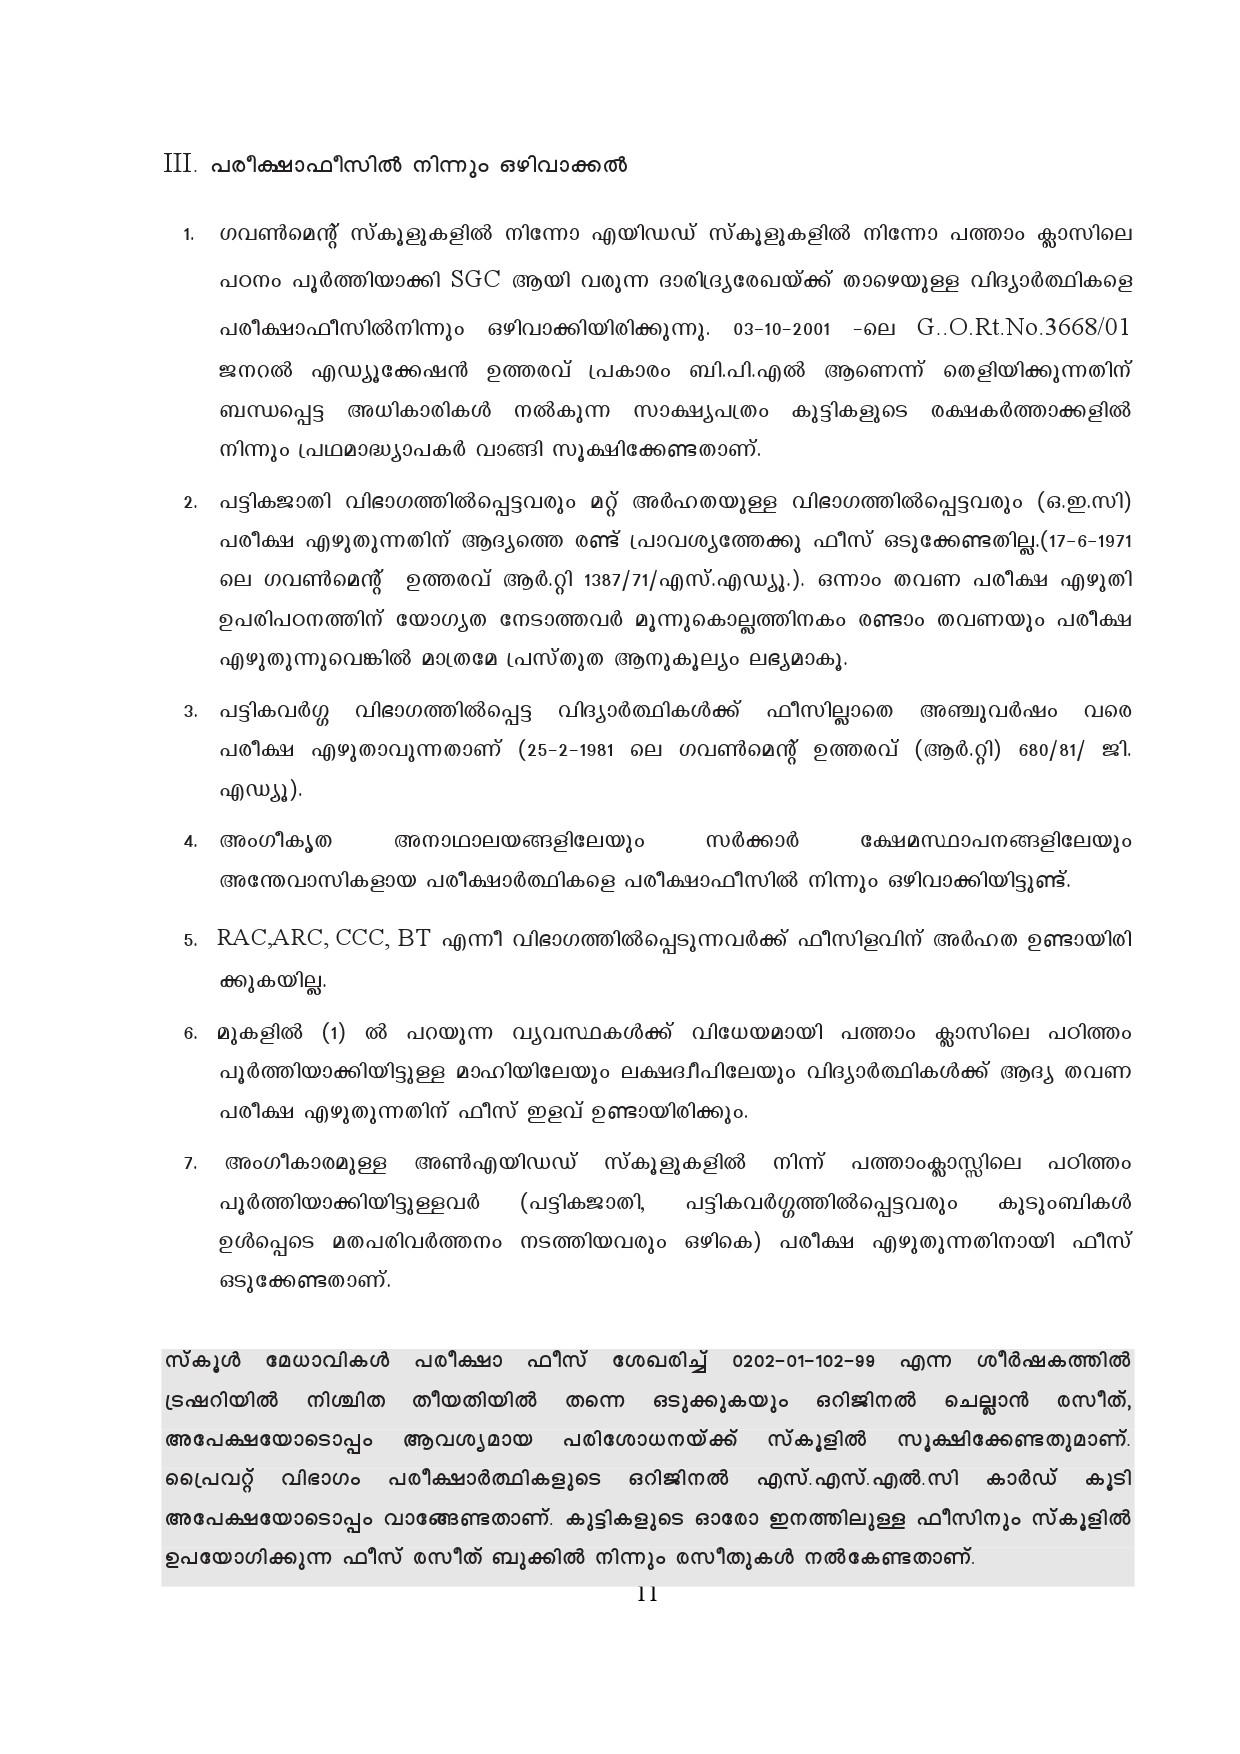 Kerala SSLC Exam Result 2019 - Notification Image 11